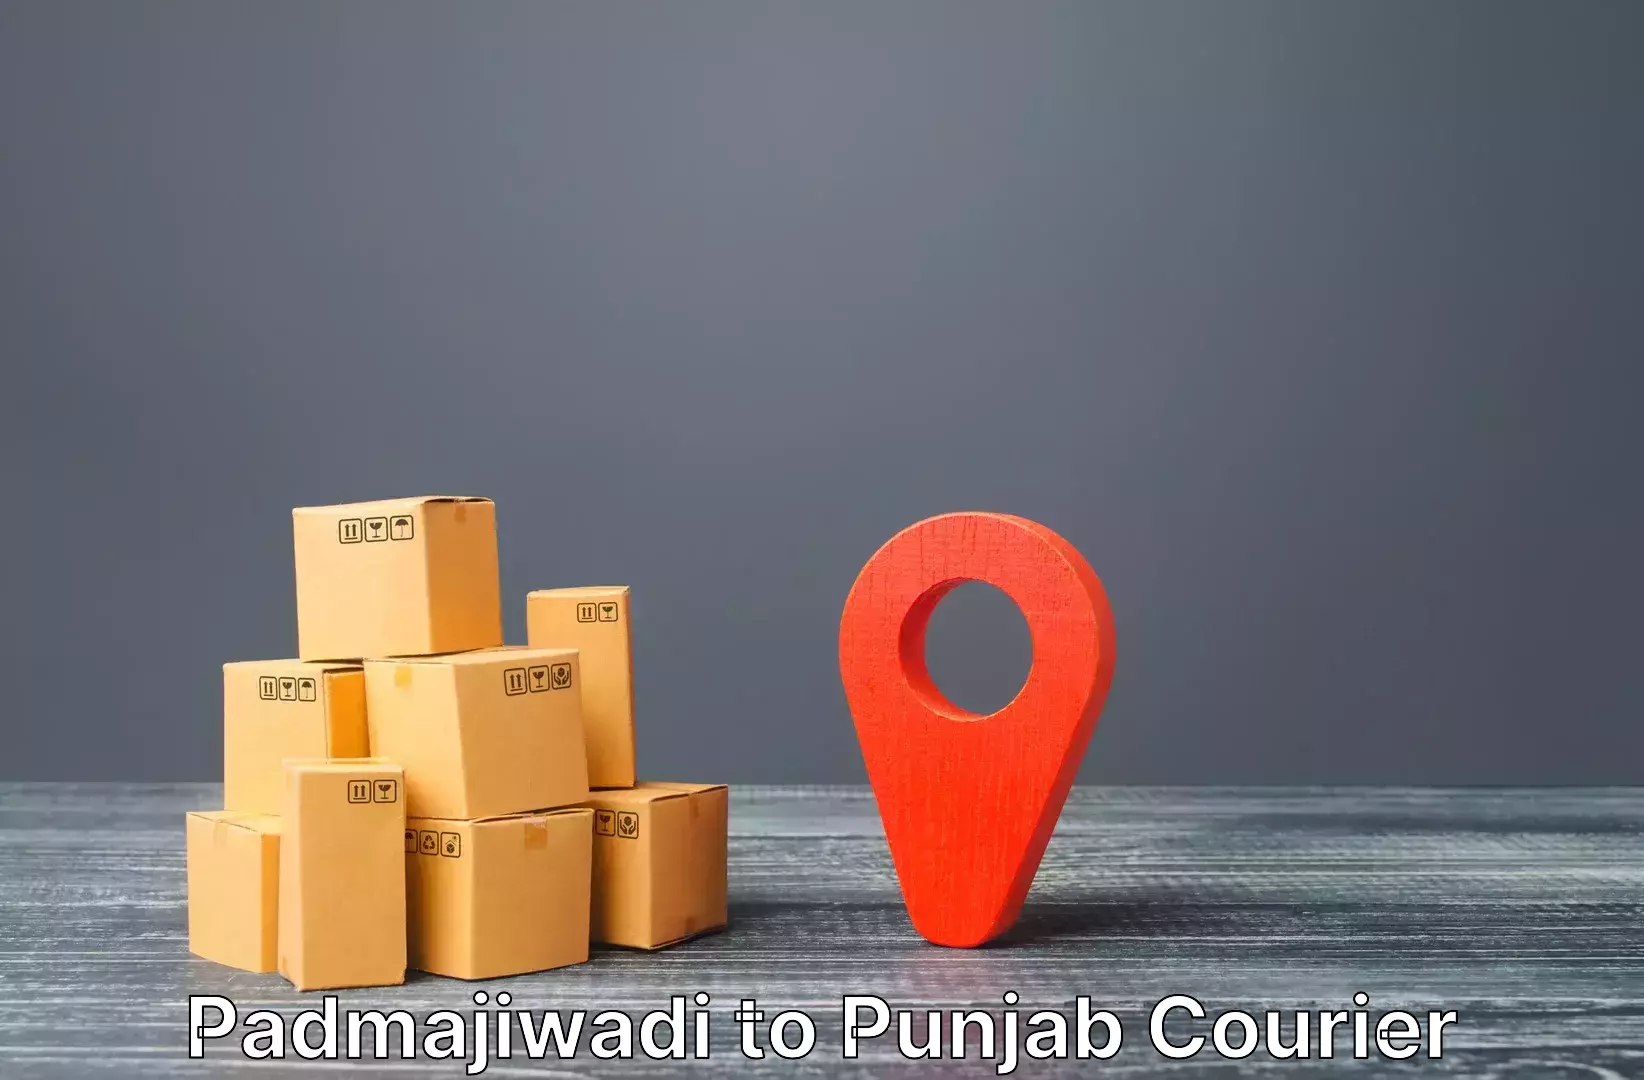 Luggage delivery system Padmajiwadi to Dinanagar